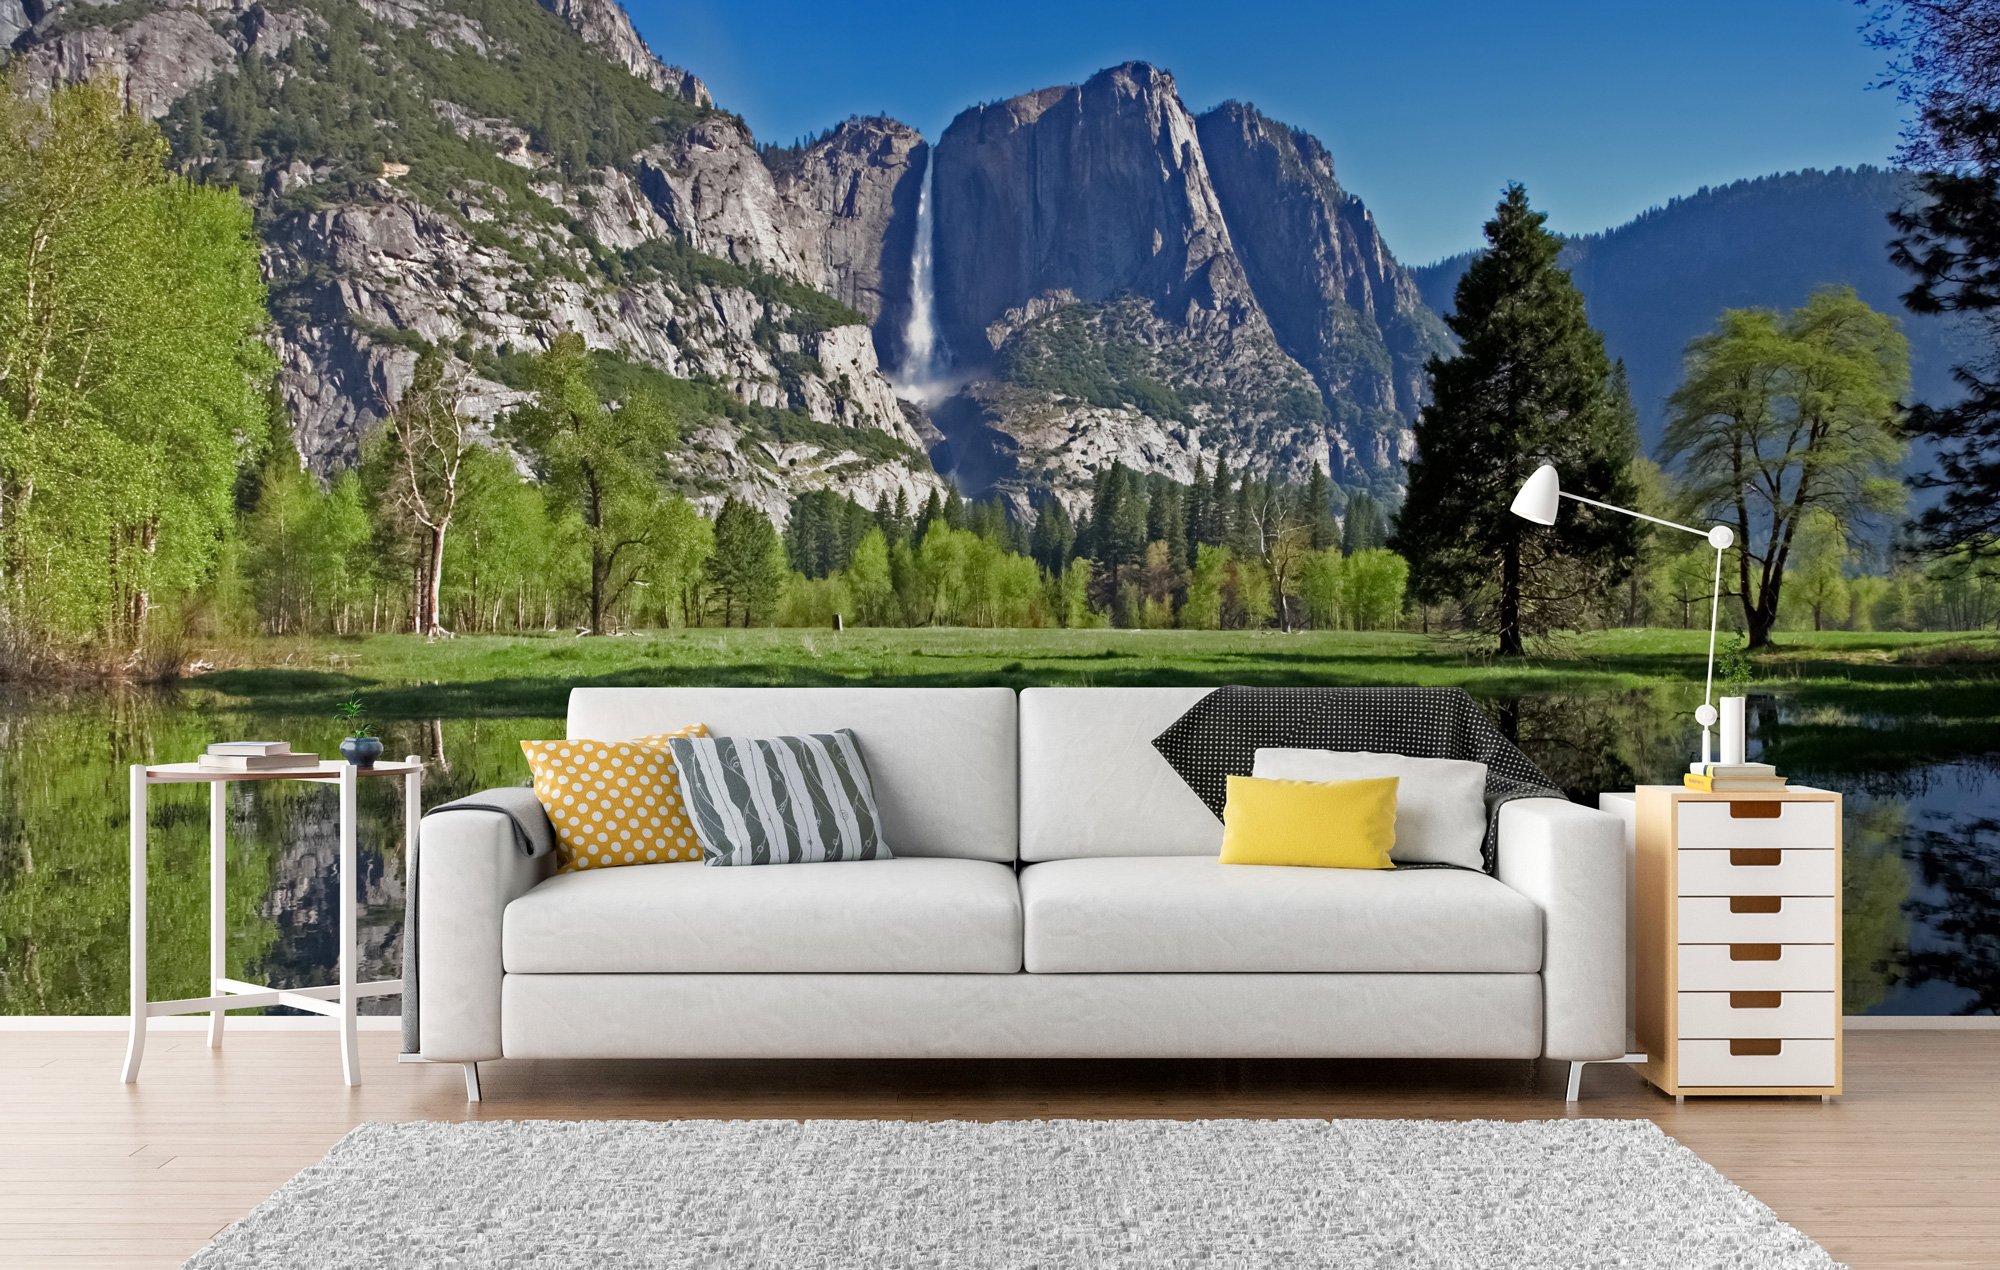 Yosemite landscape wallpaper by Wallsauce